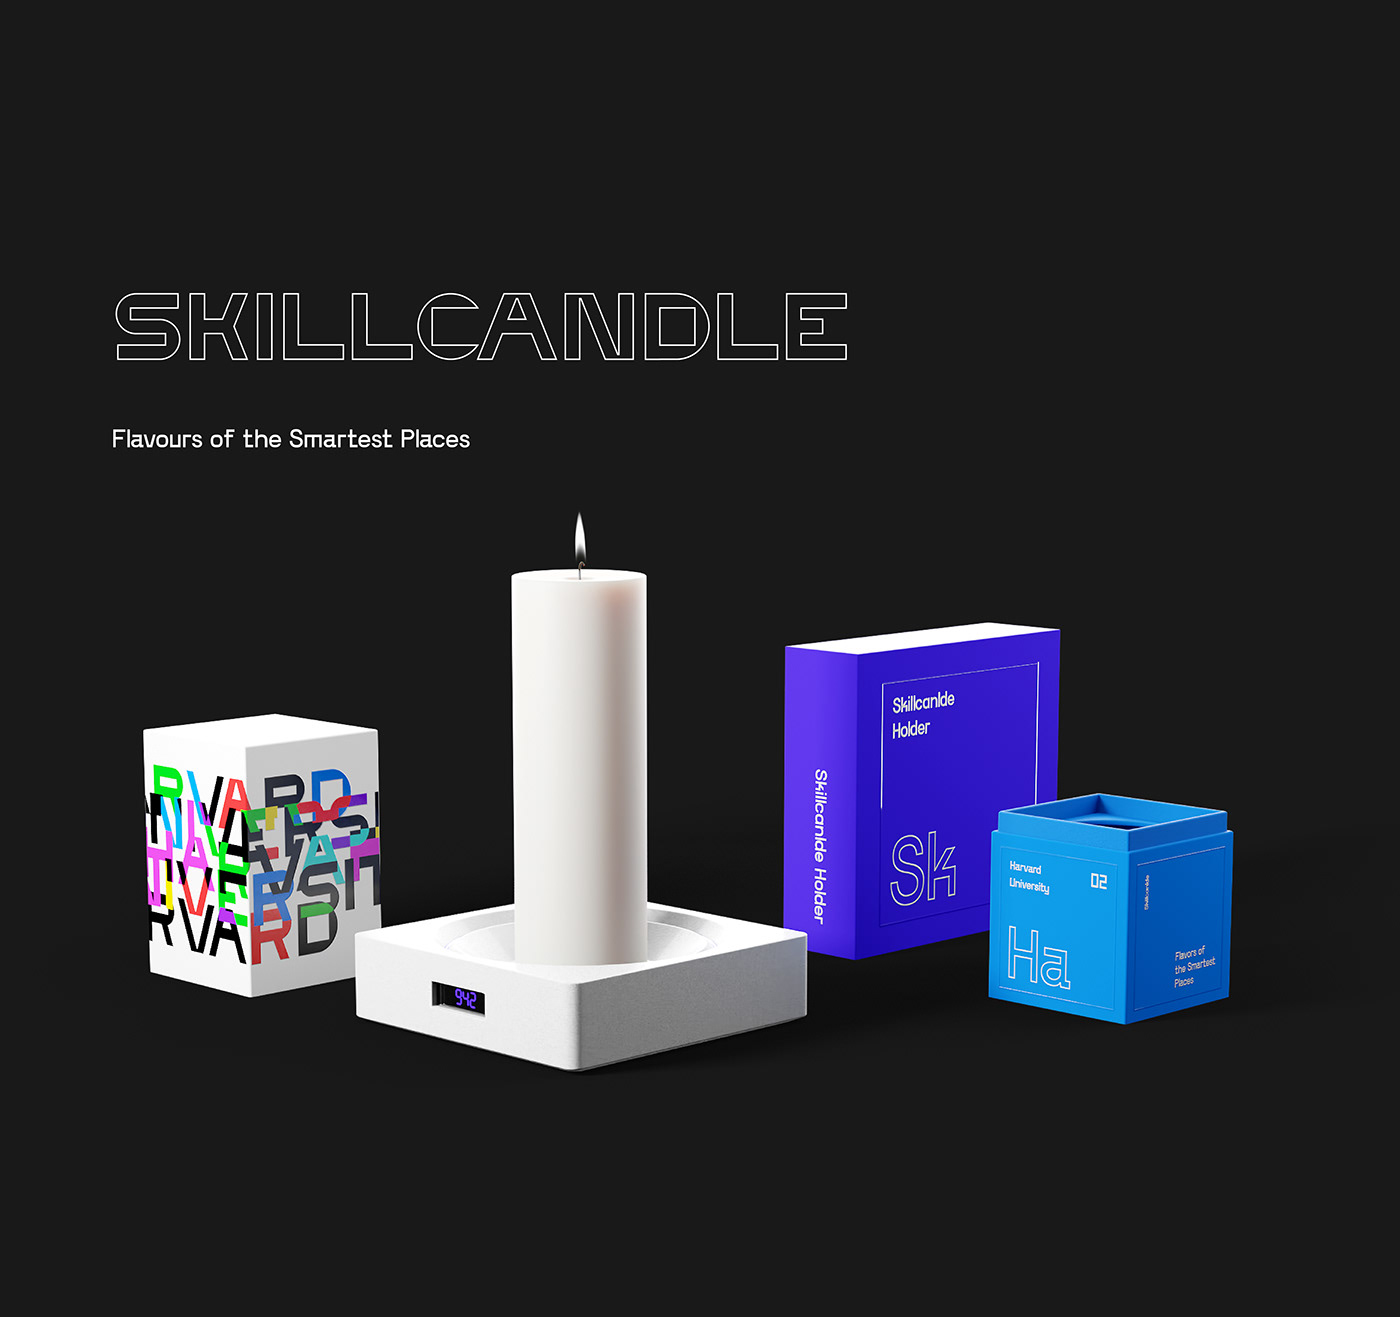 3D award branding  canlde package pattern reddot University SkillBox RedDot Winner